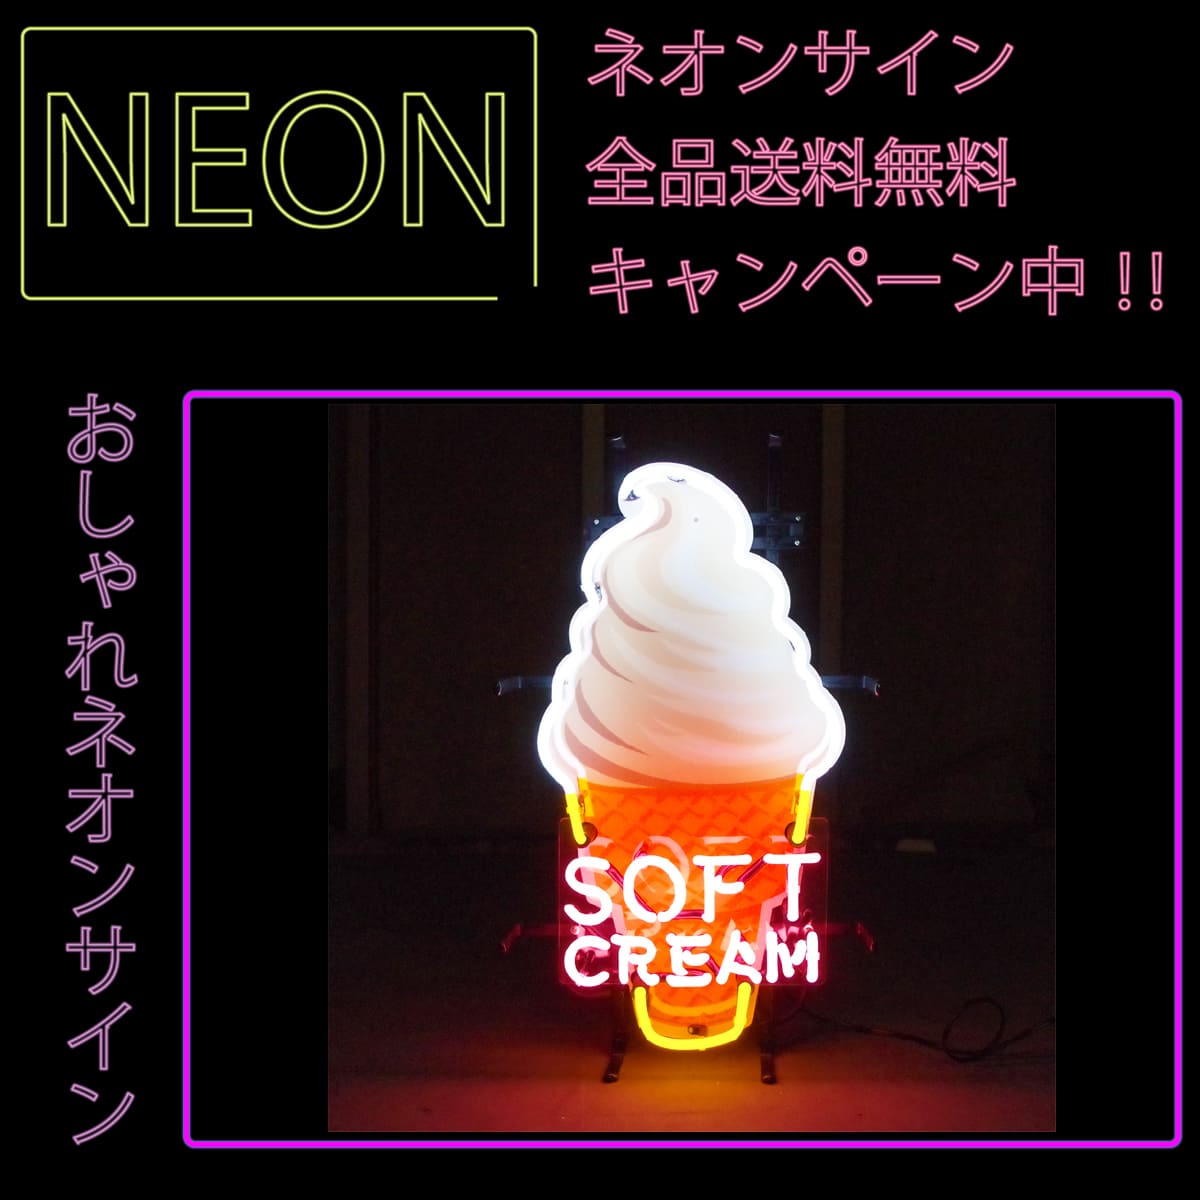 ネオンサイン 送料無料 かっこいい オシャレ インテリア Soft Cream アイスクリーム カフェ インスタ インスタ映え 海外ショップ